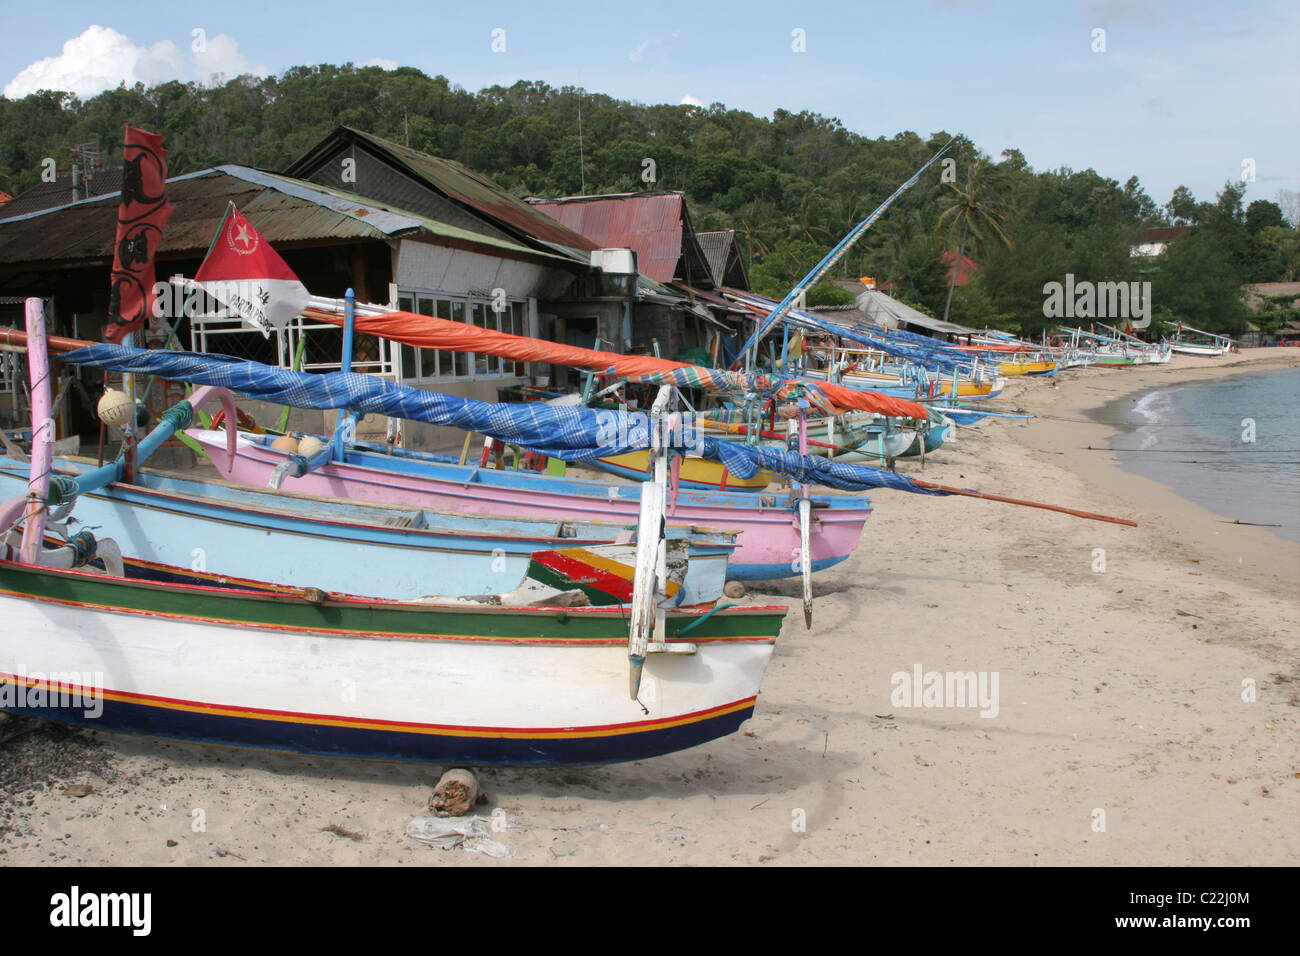 Bateaux en bois colorés, alignés sur la plage à Bali, Padangbai. Banque D'Images